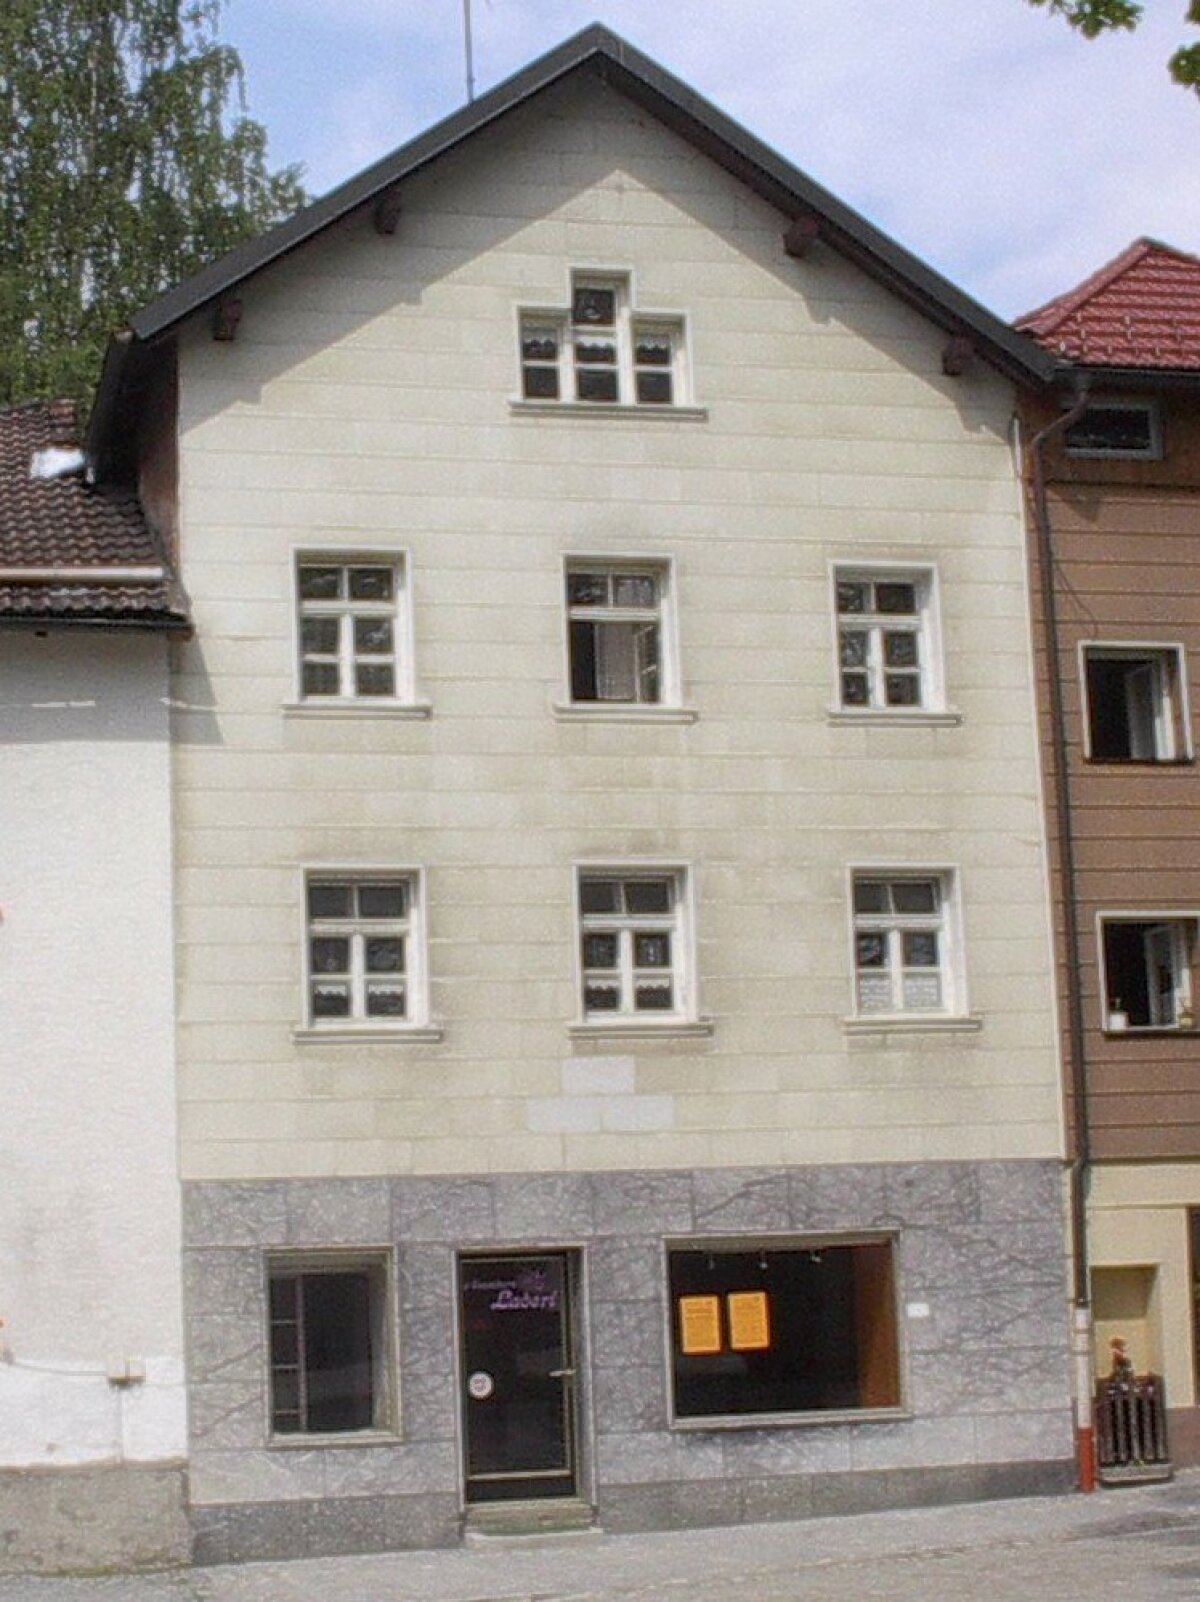 Die Fassade des dreistöckigen Wohnhauses in seiner alten grauen Erscheinung von der Sanierung ist zu erkennen.